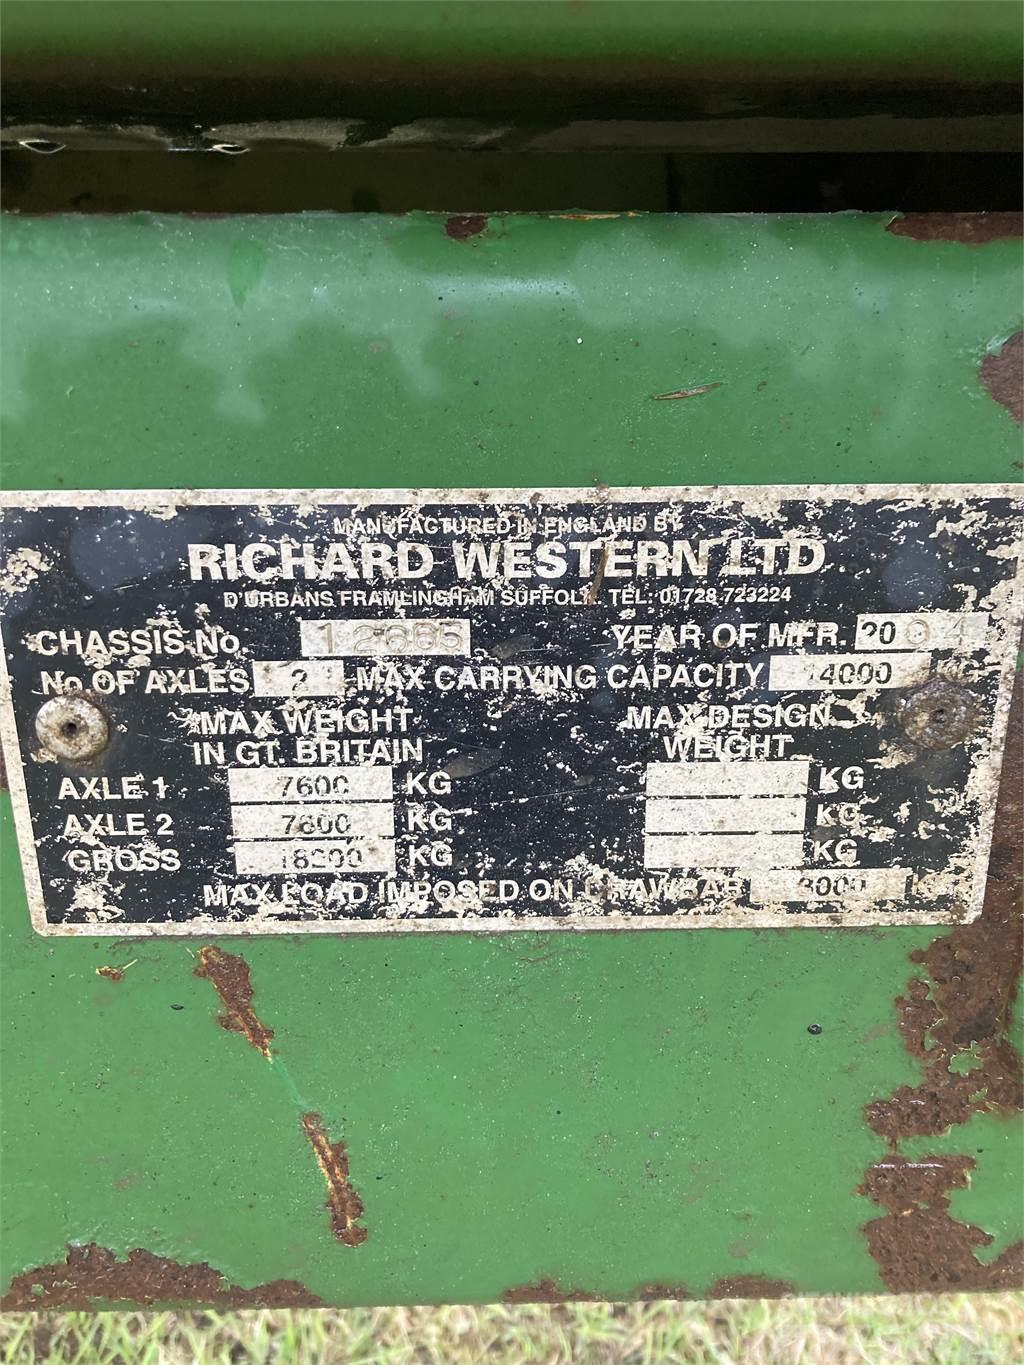 Richard Western ENSILAGEVAGN Muut kuormaus- ja kaivuulaitteet sekä lisävarusteet